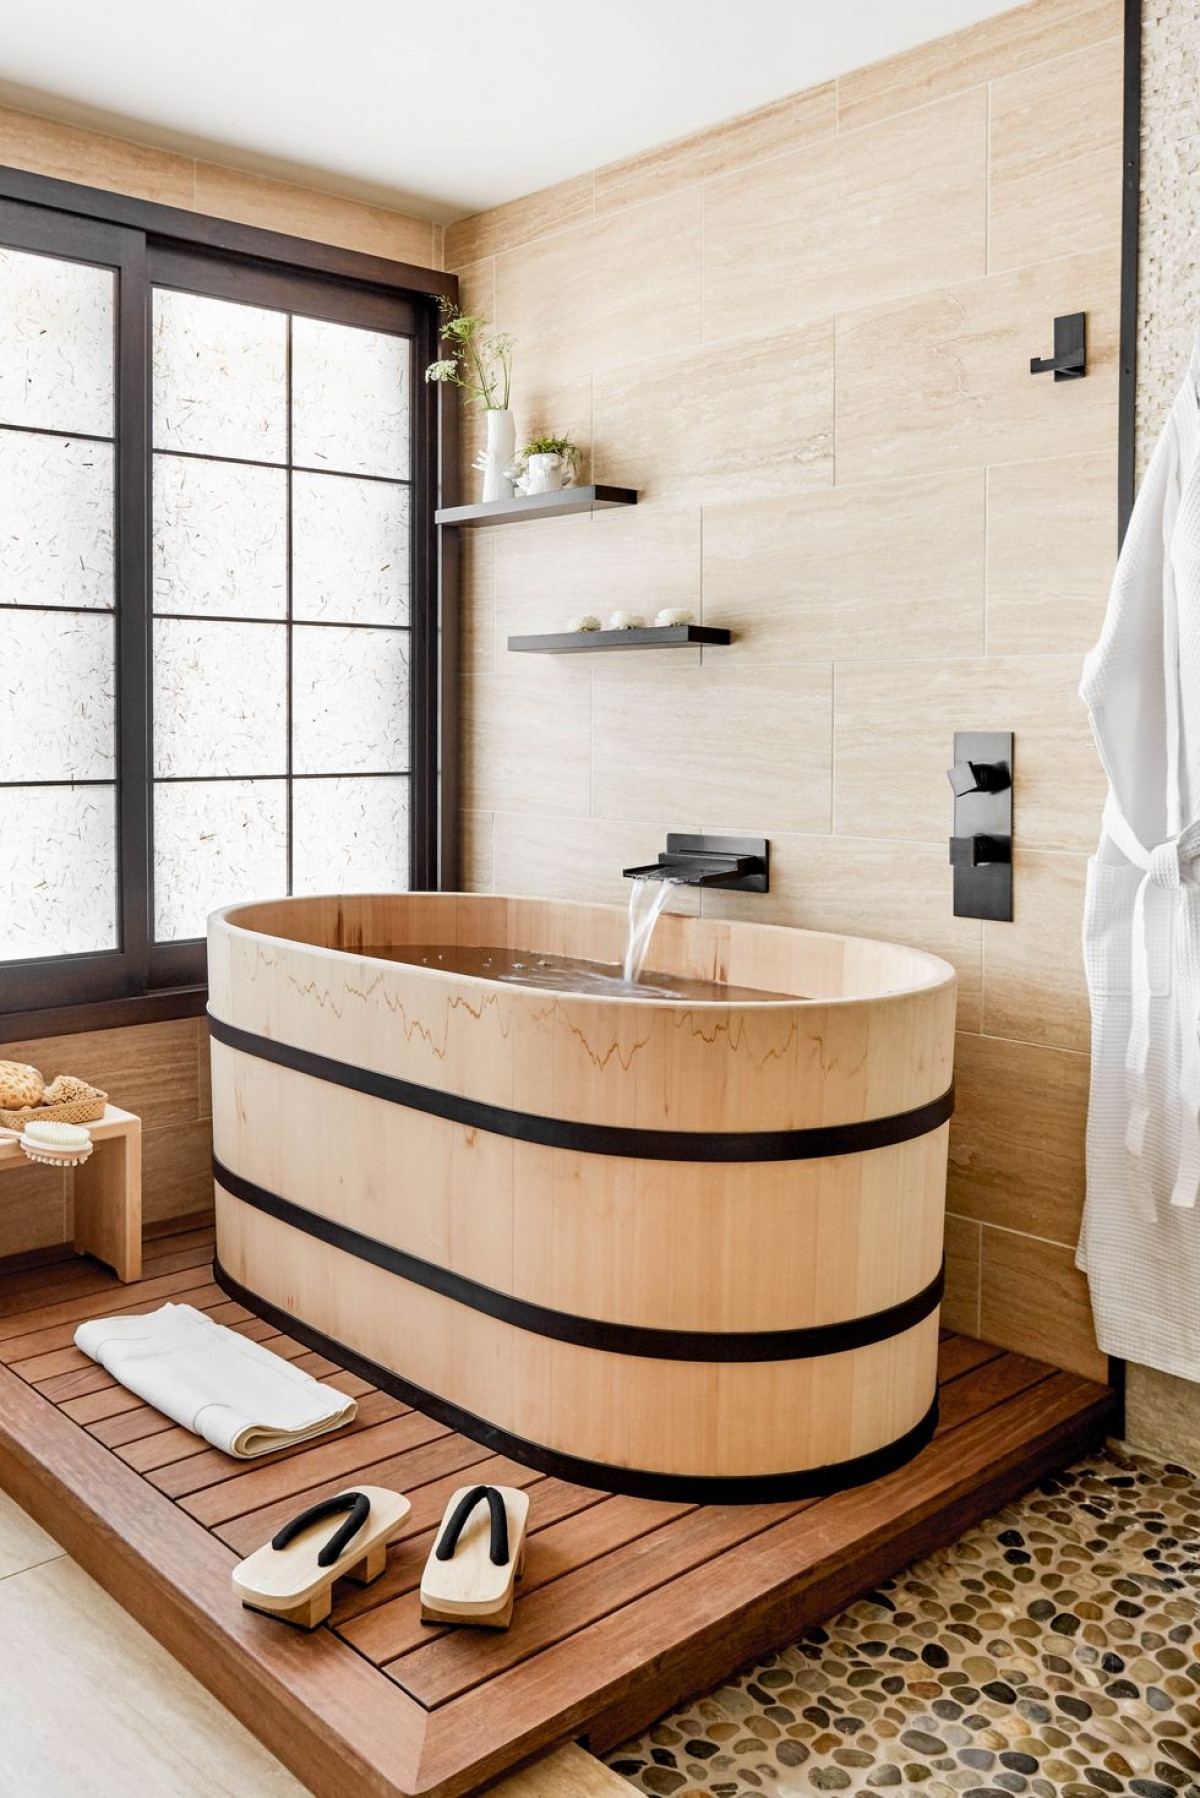 Màu gỗ tự nhiên, cách trang trí cùng tone màu cùng với các thiết kế trong phòng tắm từ gỗ giúp bạn có cảm giác hòa mình vào thiên nhiên hơn.